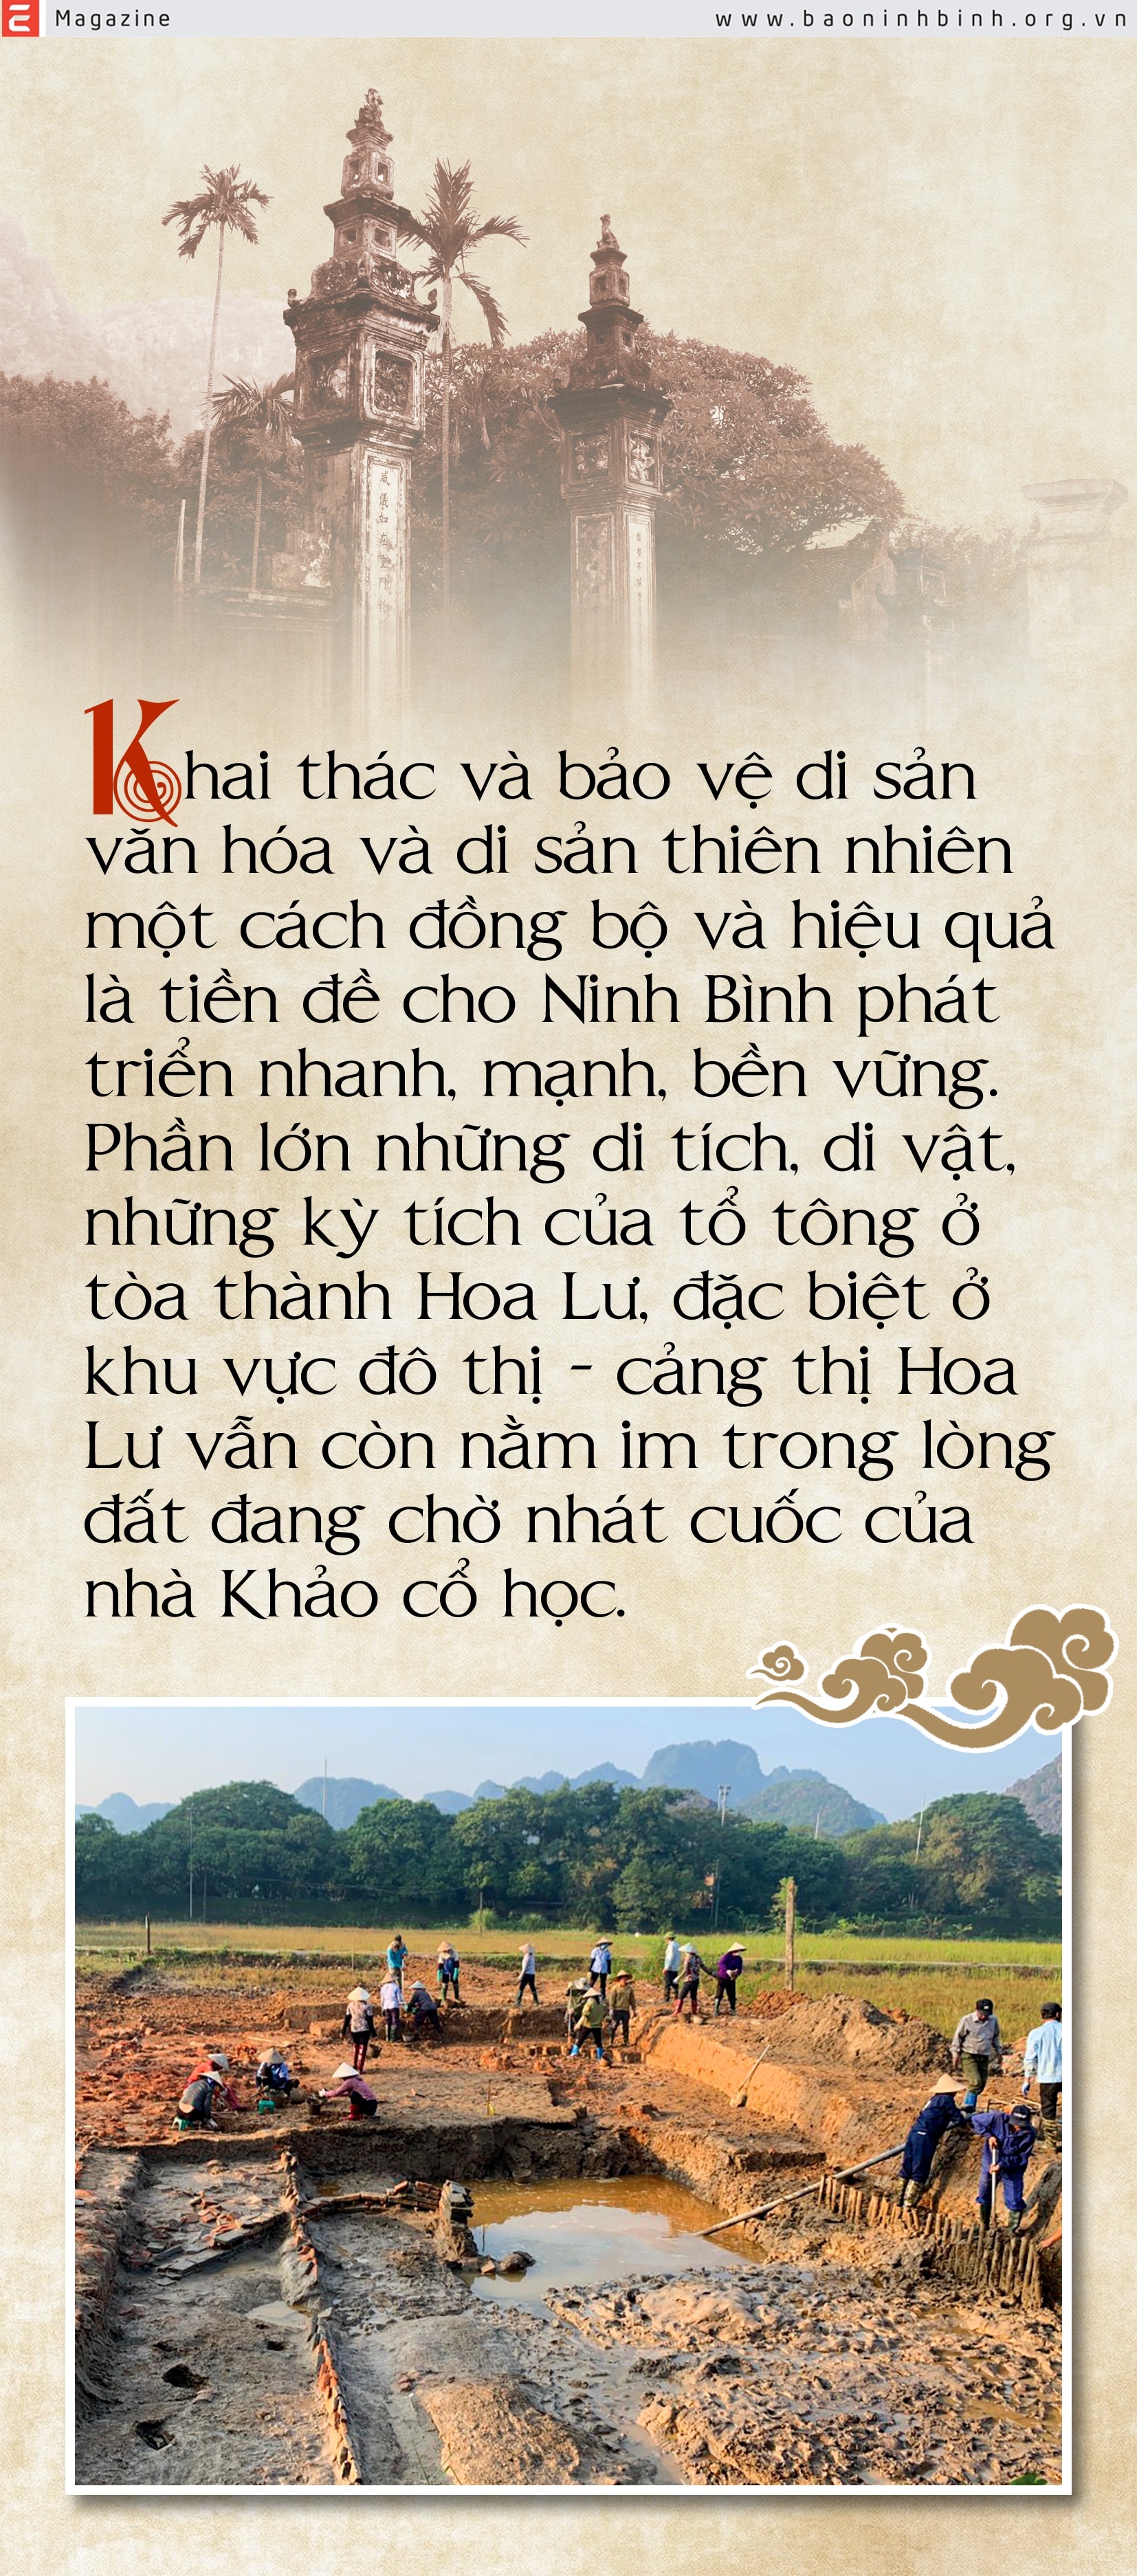 Emagazine Không gian lịch sử văn hóa Kinh đô Hoa Lư là giá trị đặc trưng định dạng thương hiệu đô thị Ninh Bình